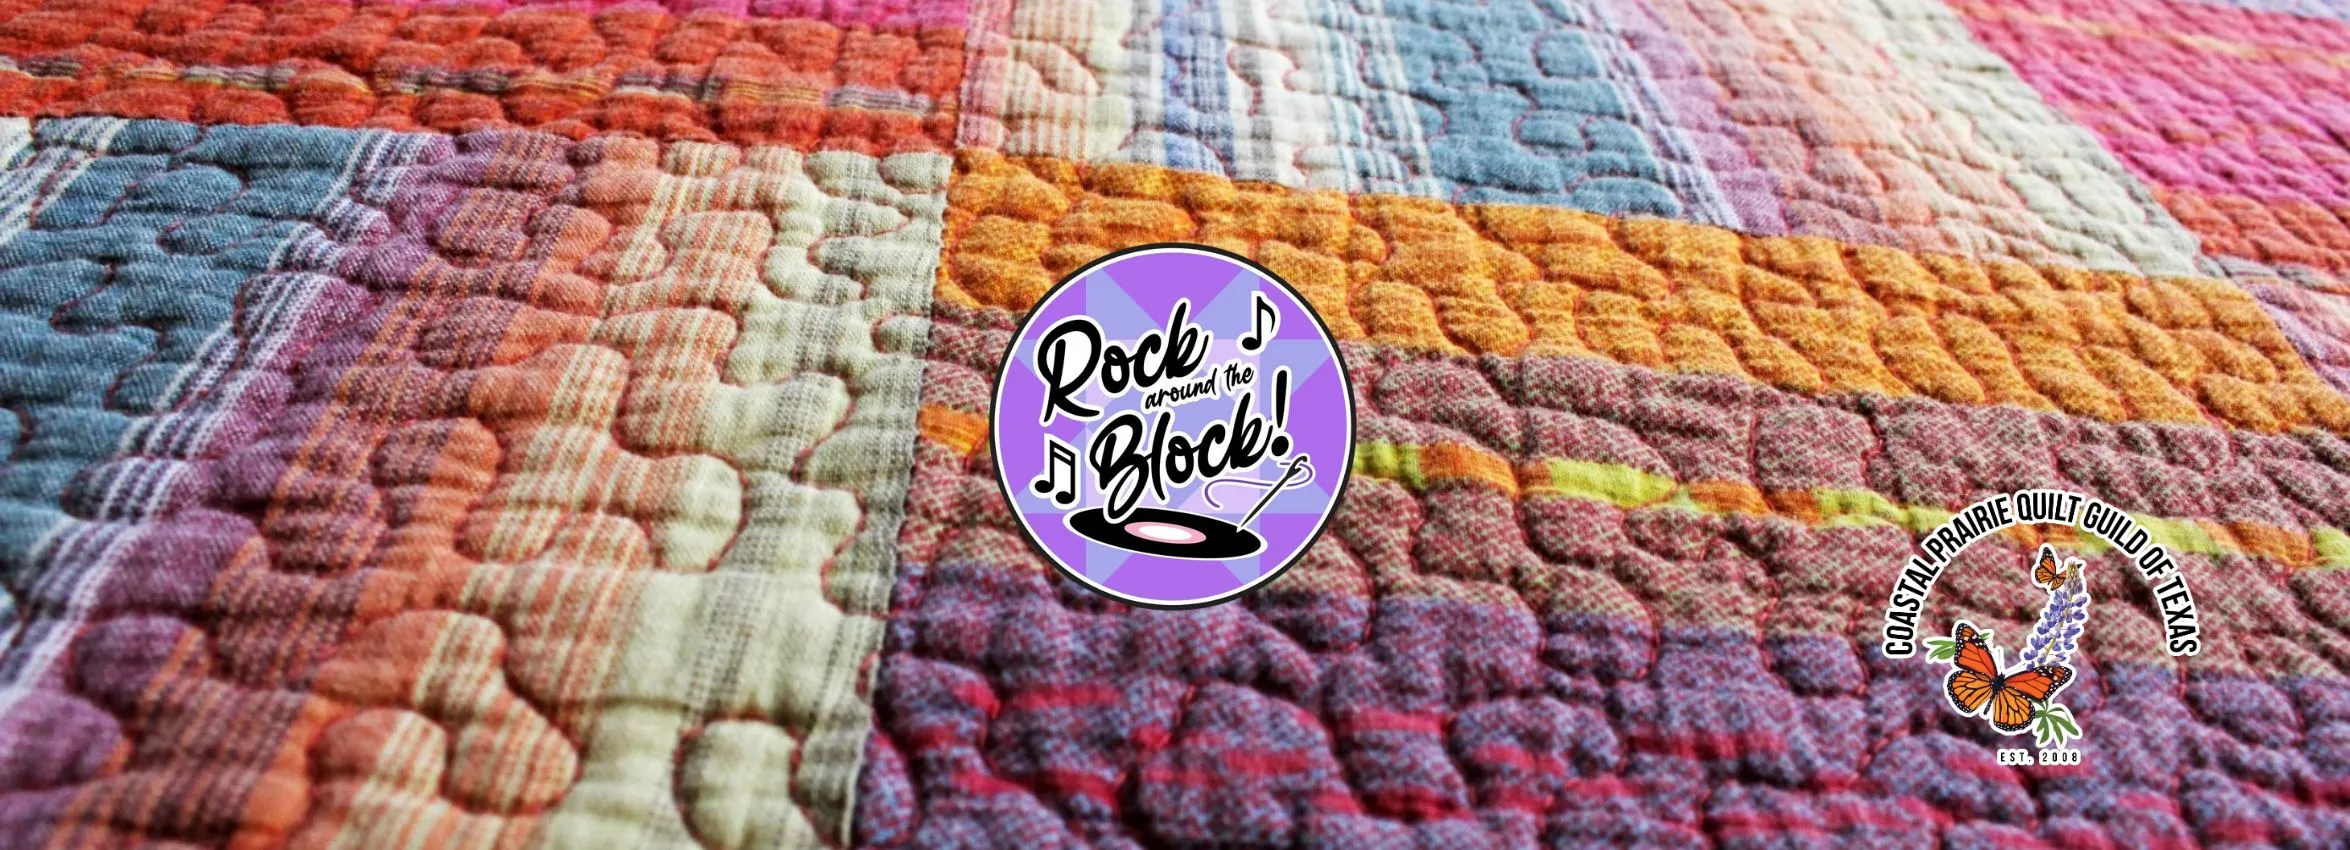 Rock-Around-the-Block_Desktop_ET